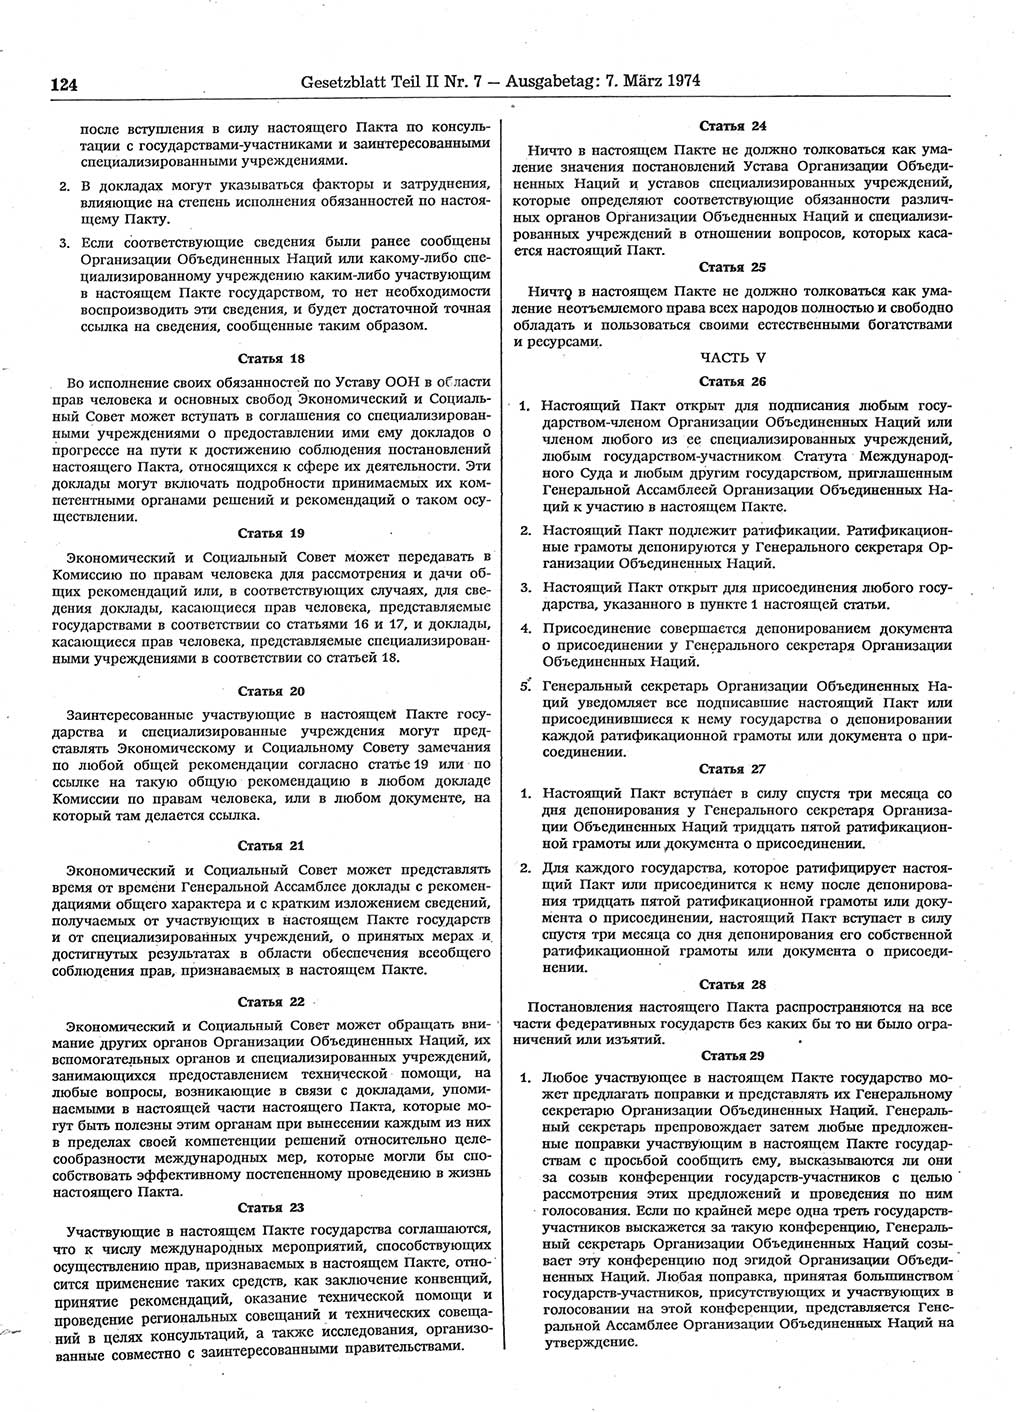 Gesetzblatt (GBl.) der Deutschen Demokratischen Republik (DDR) Teil ⅠⅠ 1974, Seite 124 (GBl. DDR ⅠⅠ 1974, S. 124)